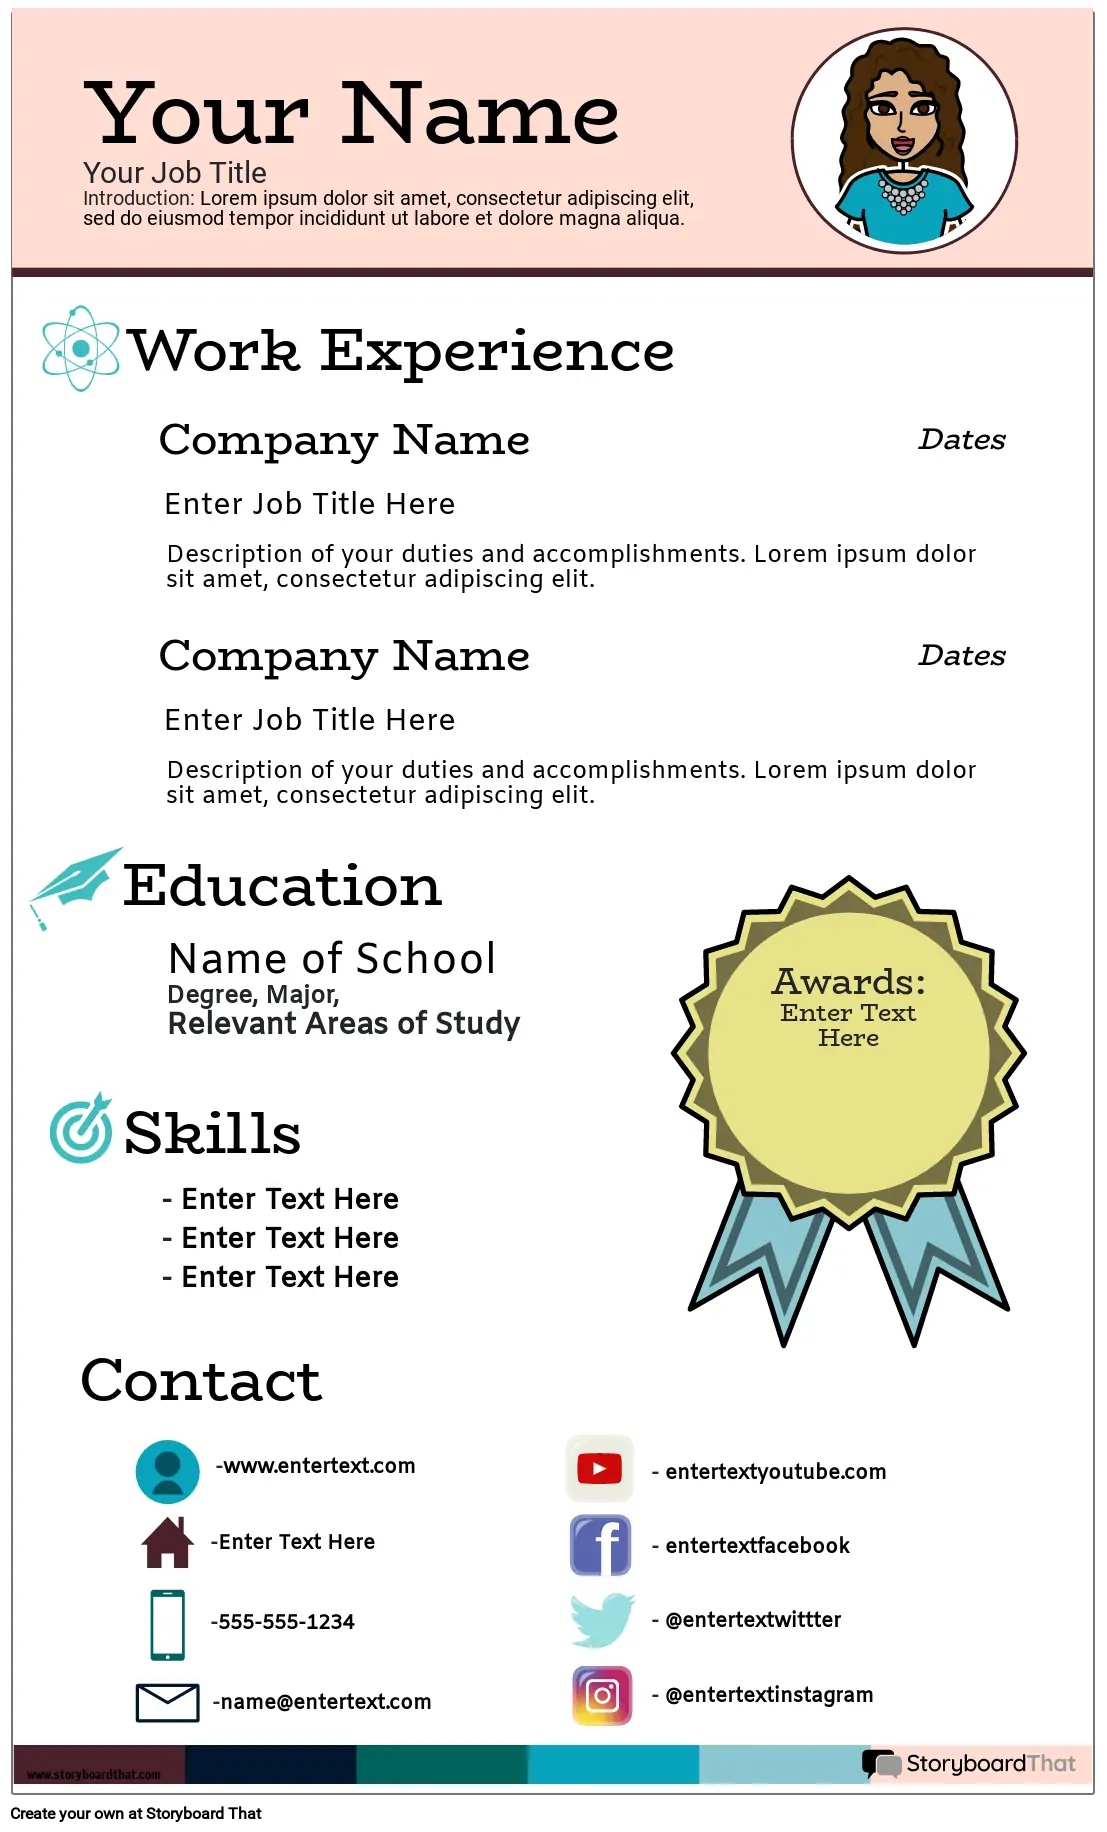 Resume Infographic Portrait Color 7